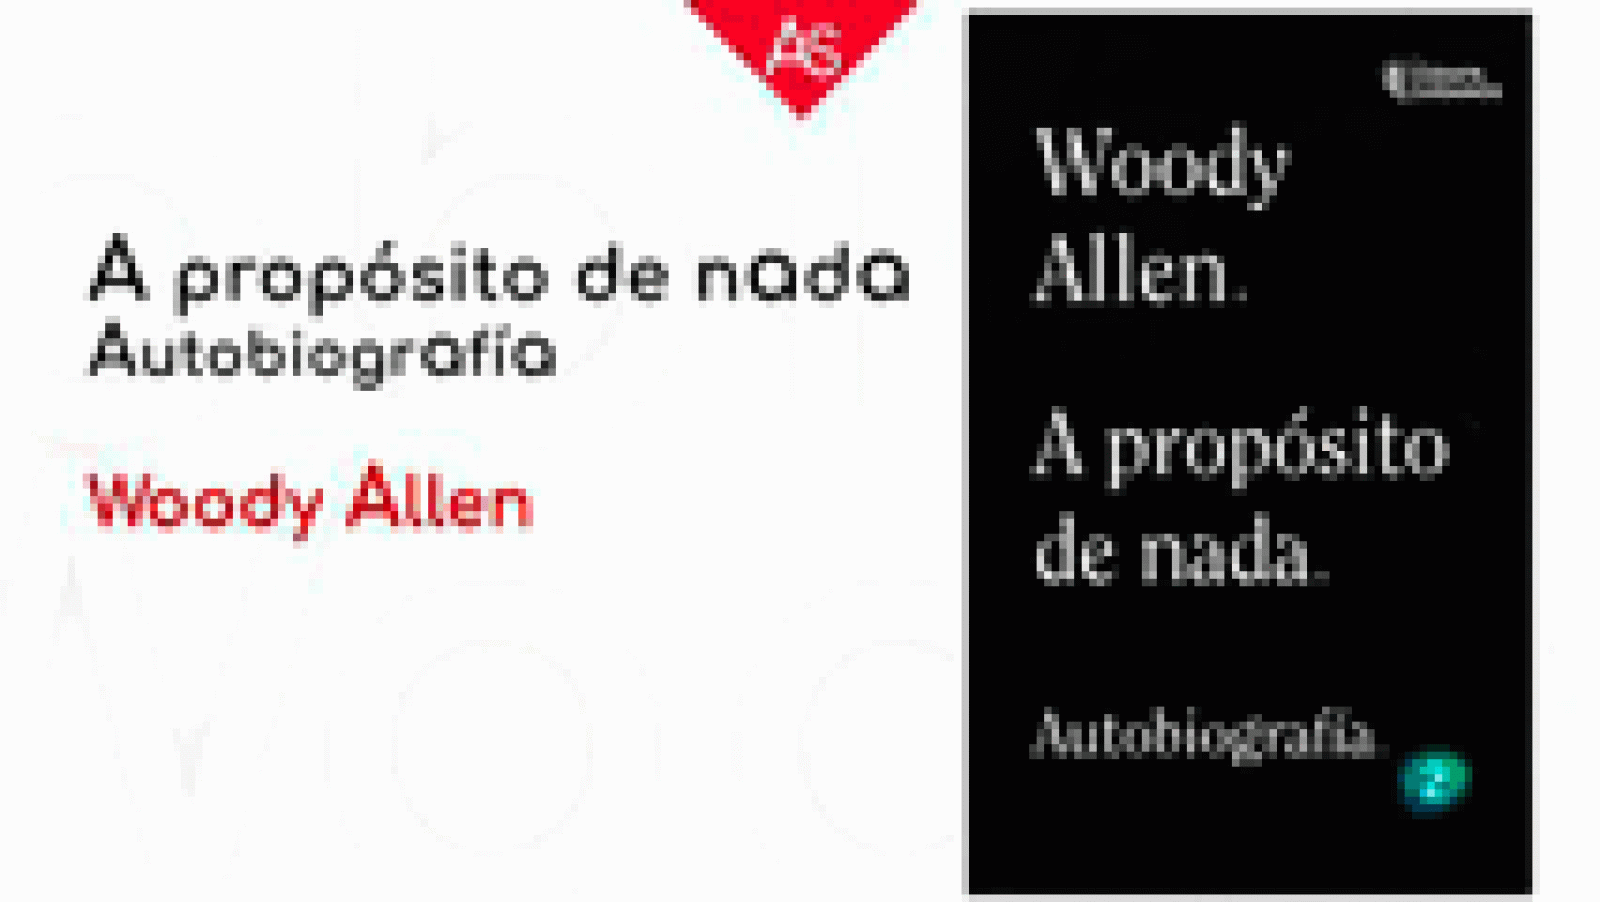 La aventura del saber A propósito de nada Woody Allen Alianza Editorial.